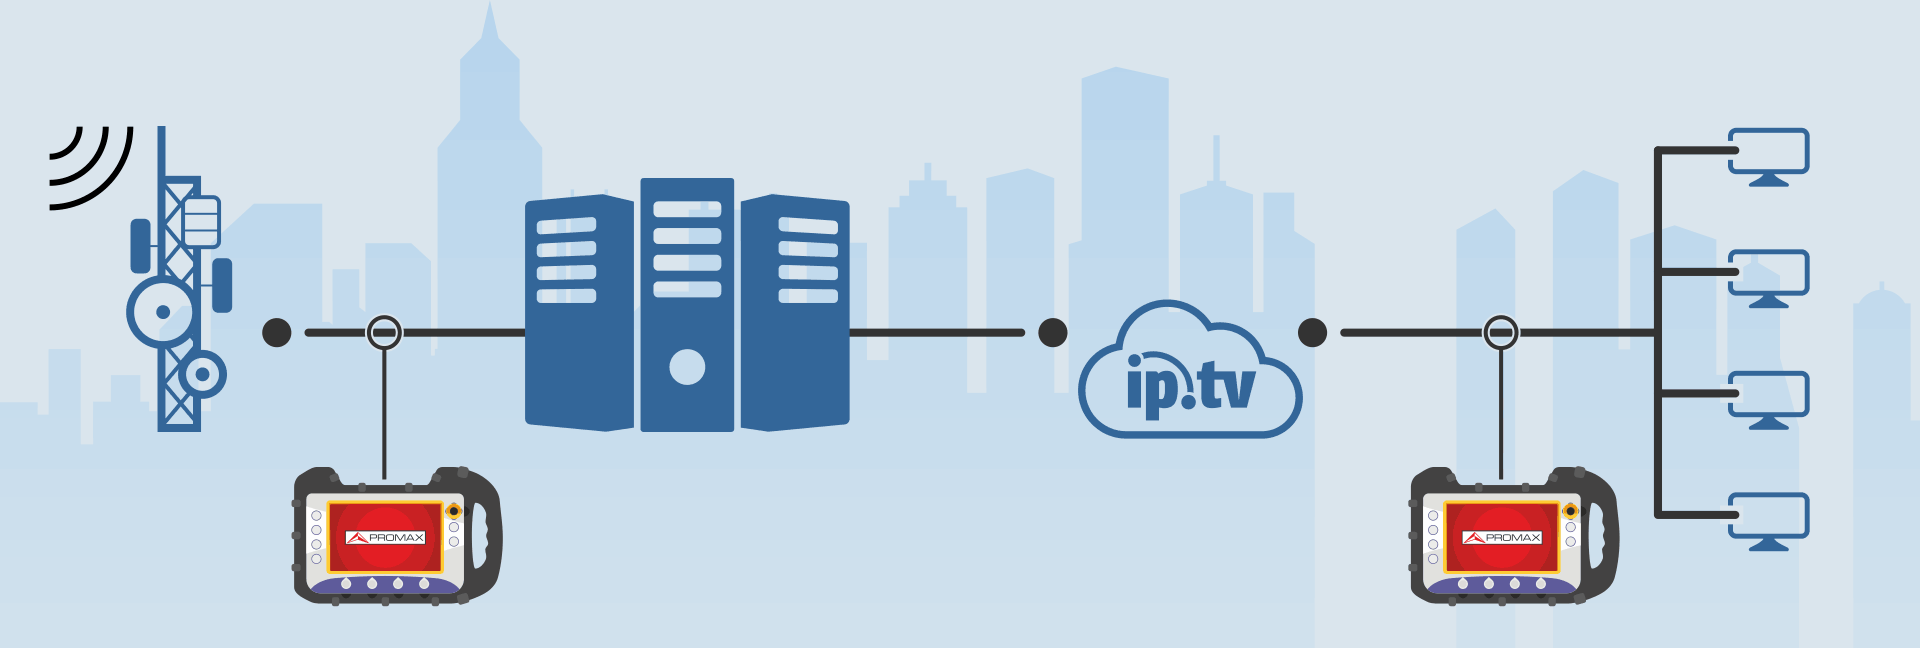 TГлобальное решение для тестирования и измерения для операторов сетей IPTV и OTT